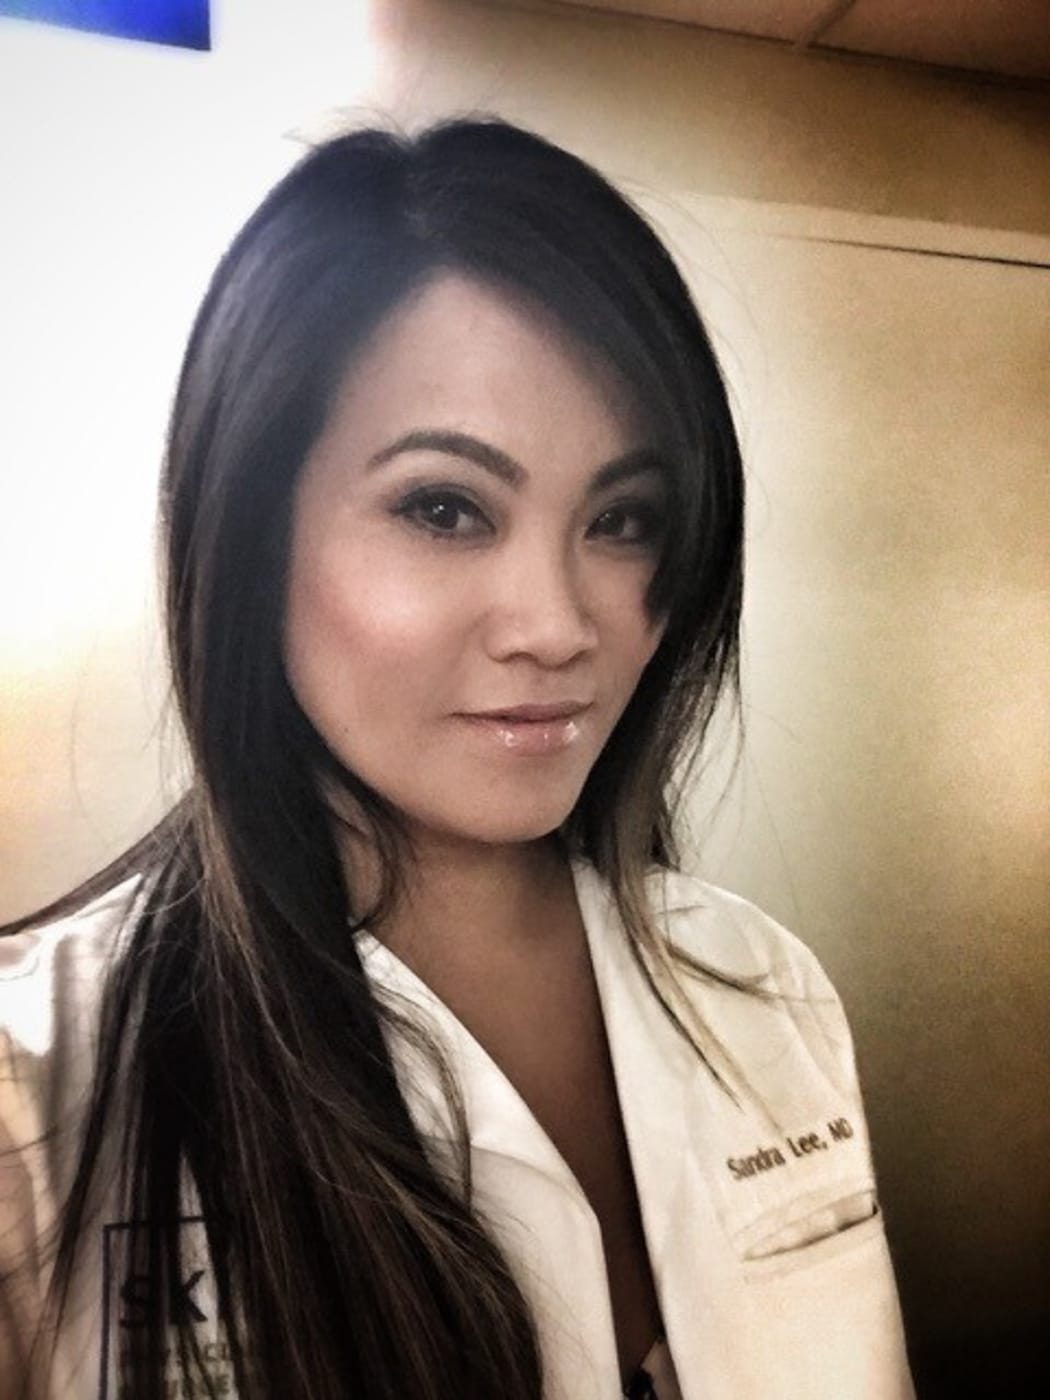 Dr Sandra Lee - Dr Pimple Popper